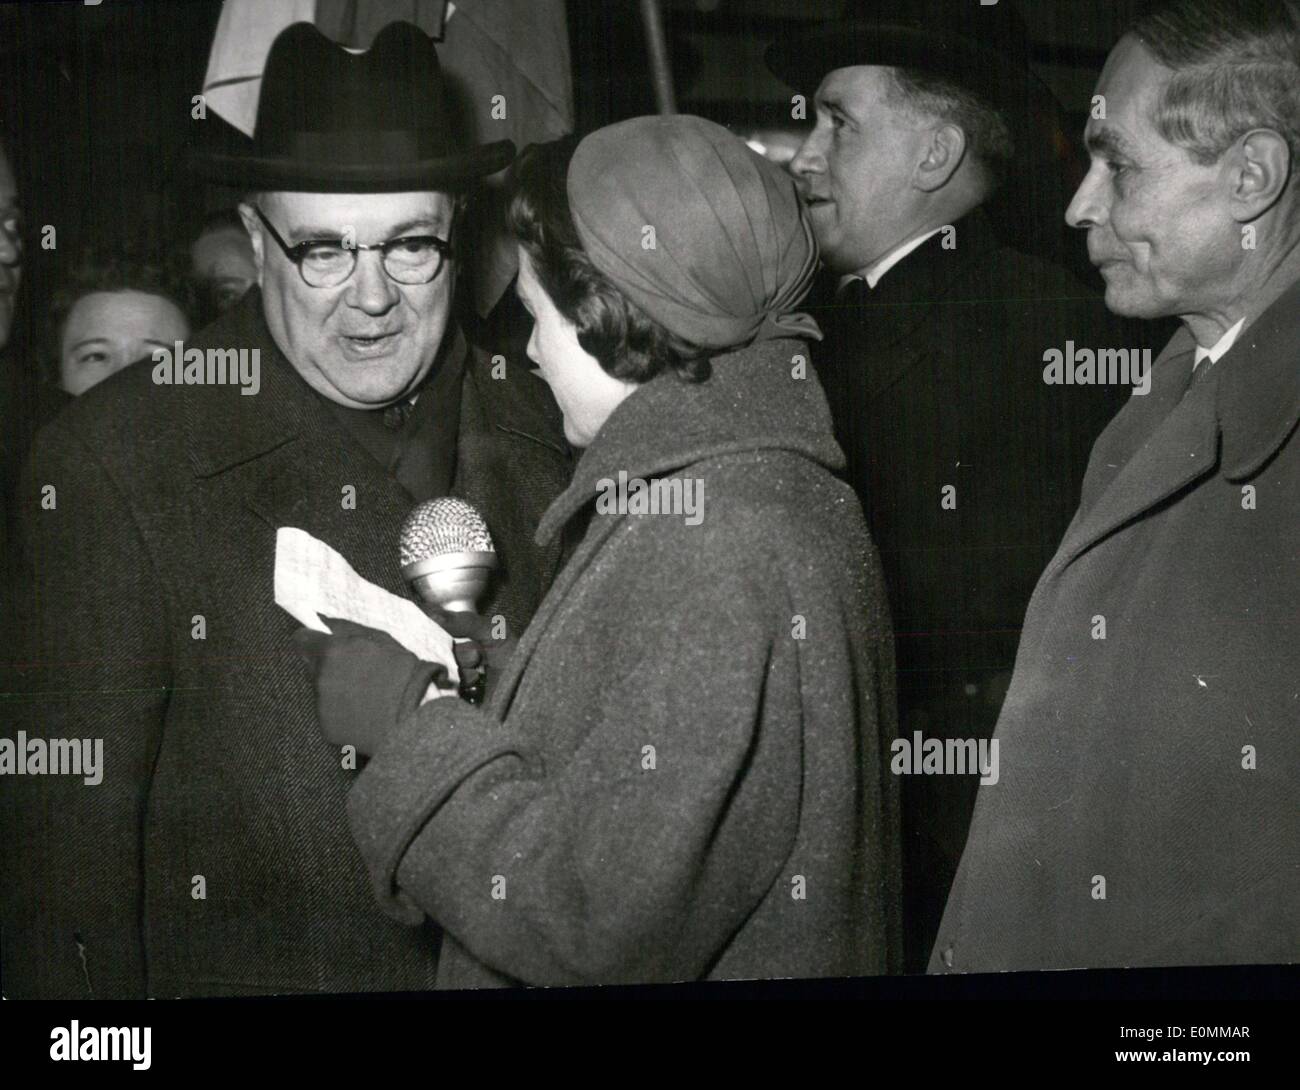 Nov. 24, 1955 - Un amico di Berlino, un uomo che è considerato come dell'Europa n. 1 è arrivato oggi all'aeroporto Tempelhof di Berlino. Ministro degli Esteri belga Paul Henri Spaak. Egli ci vuole aiutare il sonno idea europea per attivare di nuovo. Foto Stock